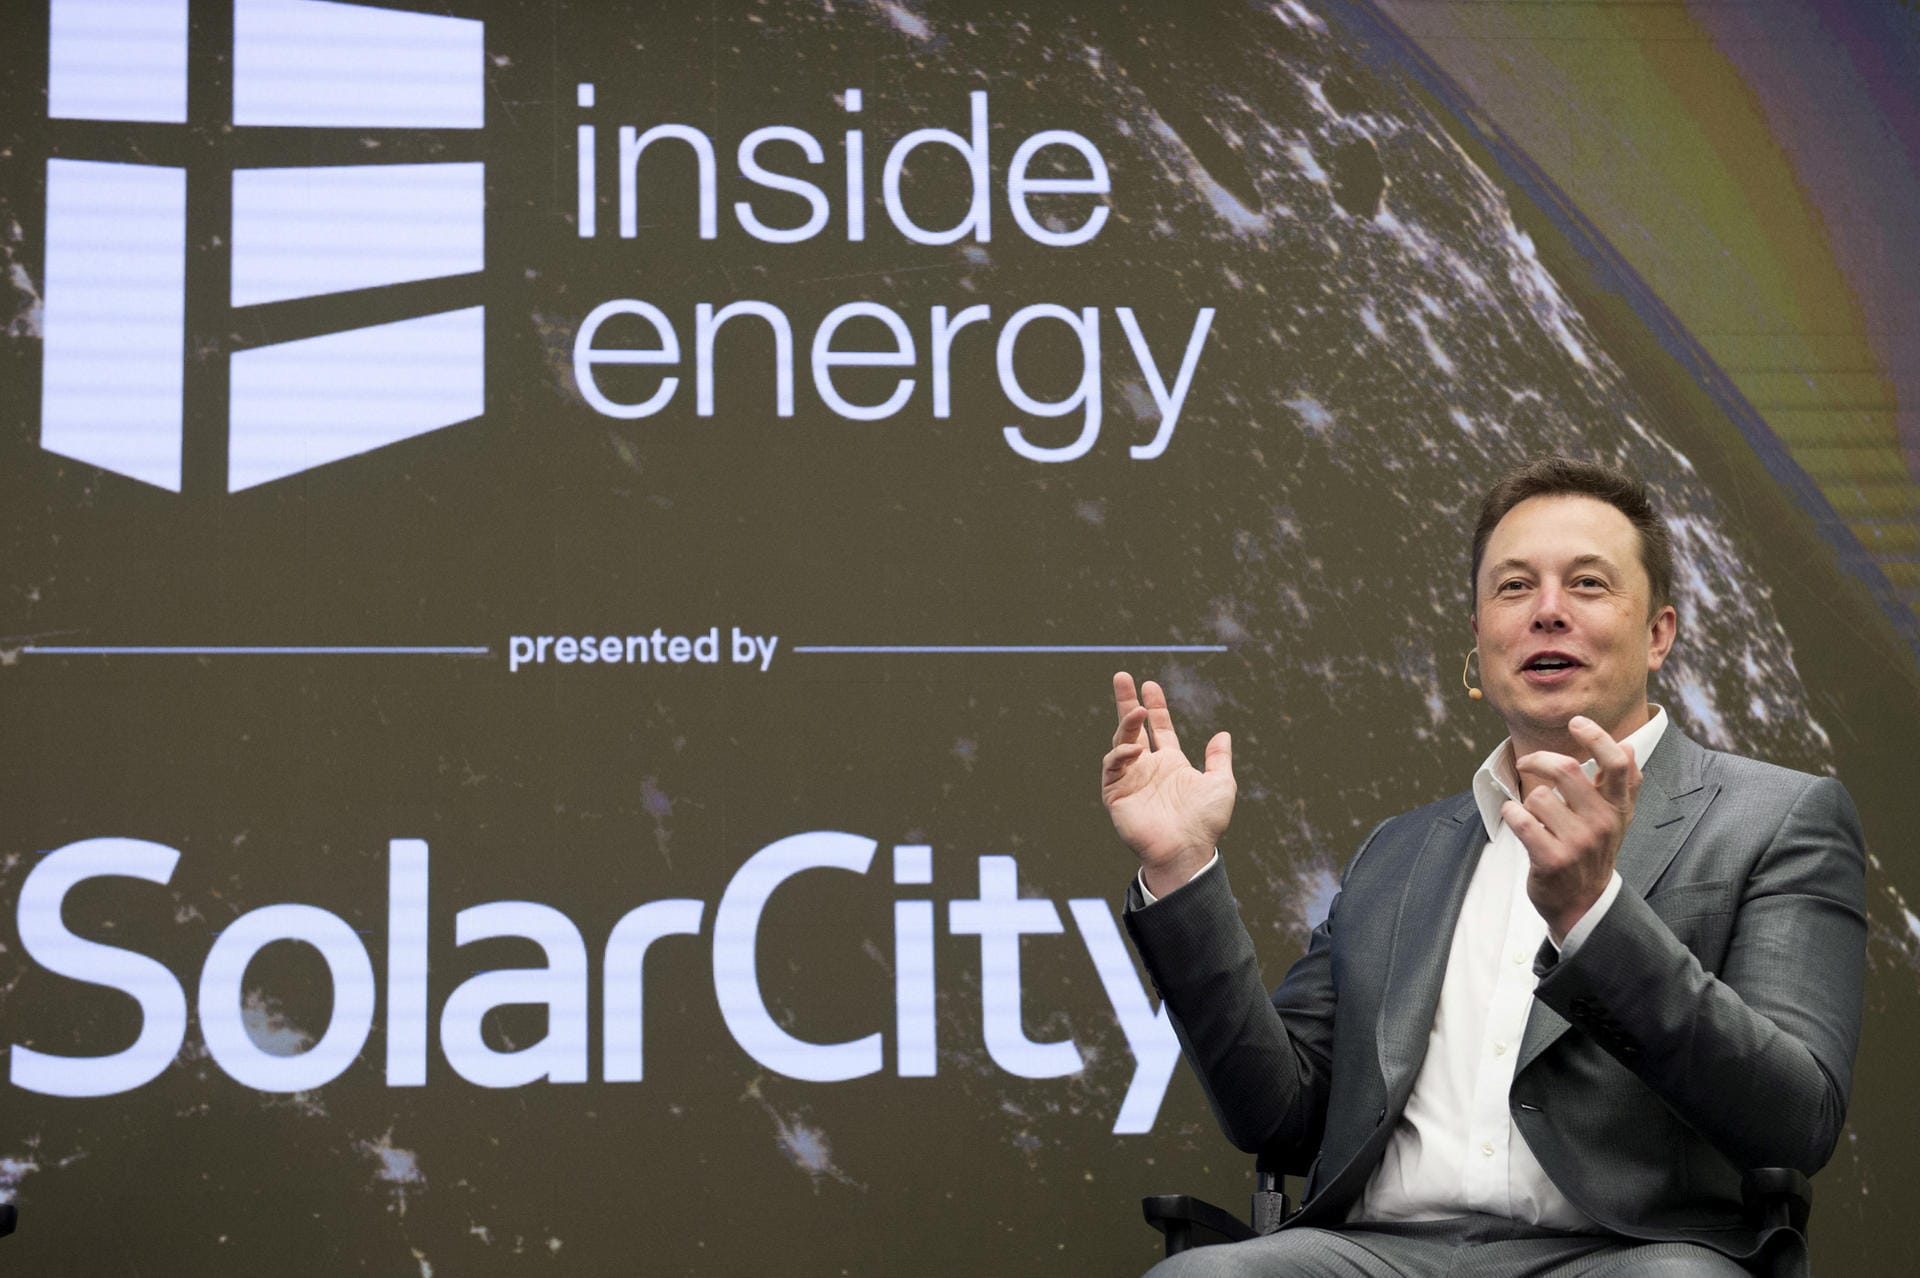 2006 gründete Musk Solar City: Das Unternehmen konzipiert Solarstromanlagen.